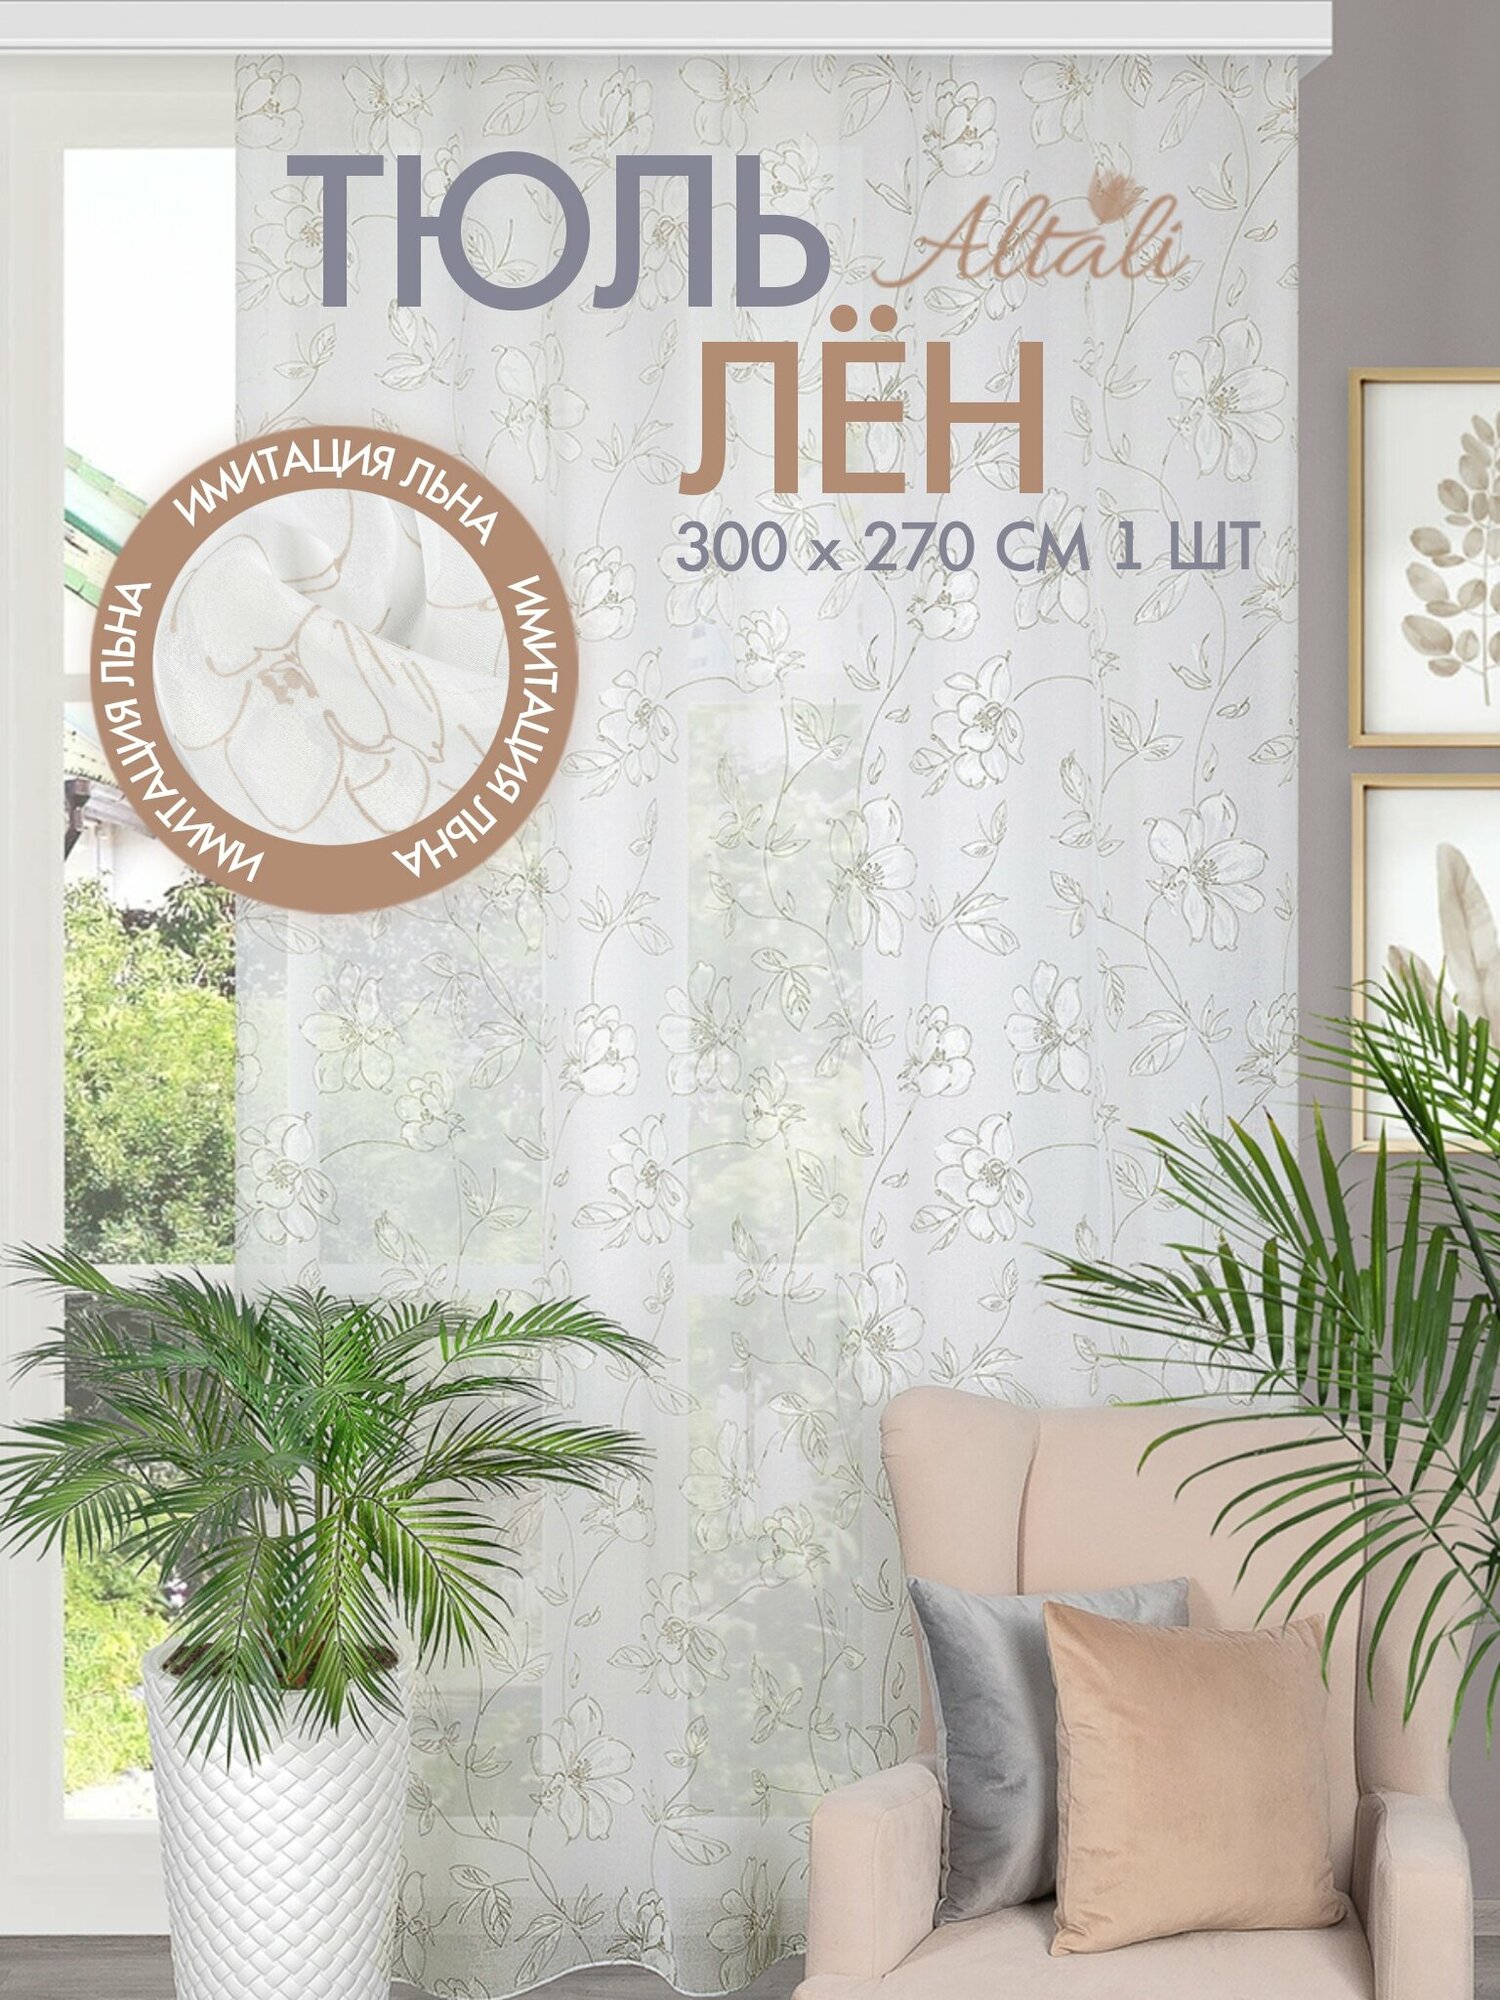 Тюль вуаль с рисунком для интерьера гостиной, спальни, кухни / 300х270 см, на ленте / основа под лён / дом, дача / Зефир / Altali